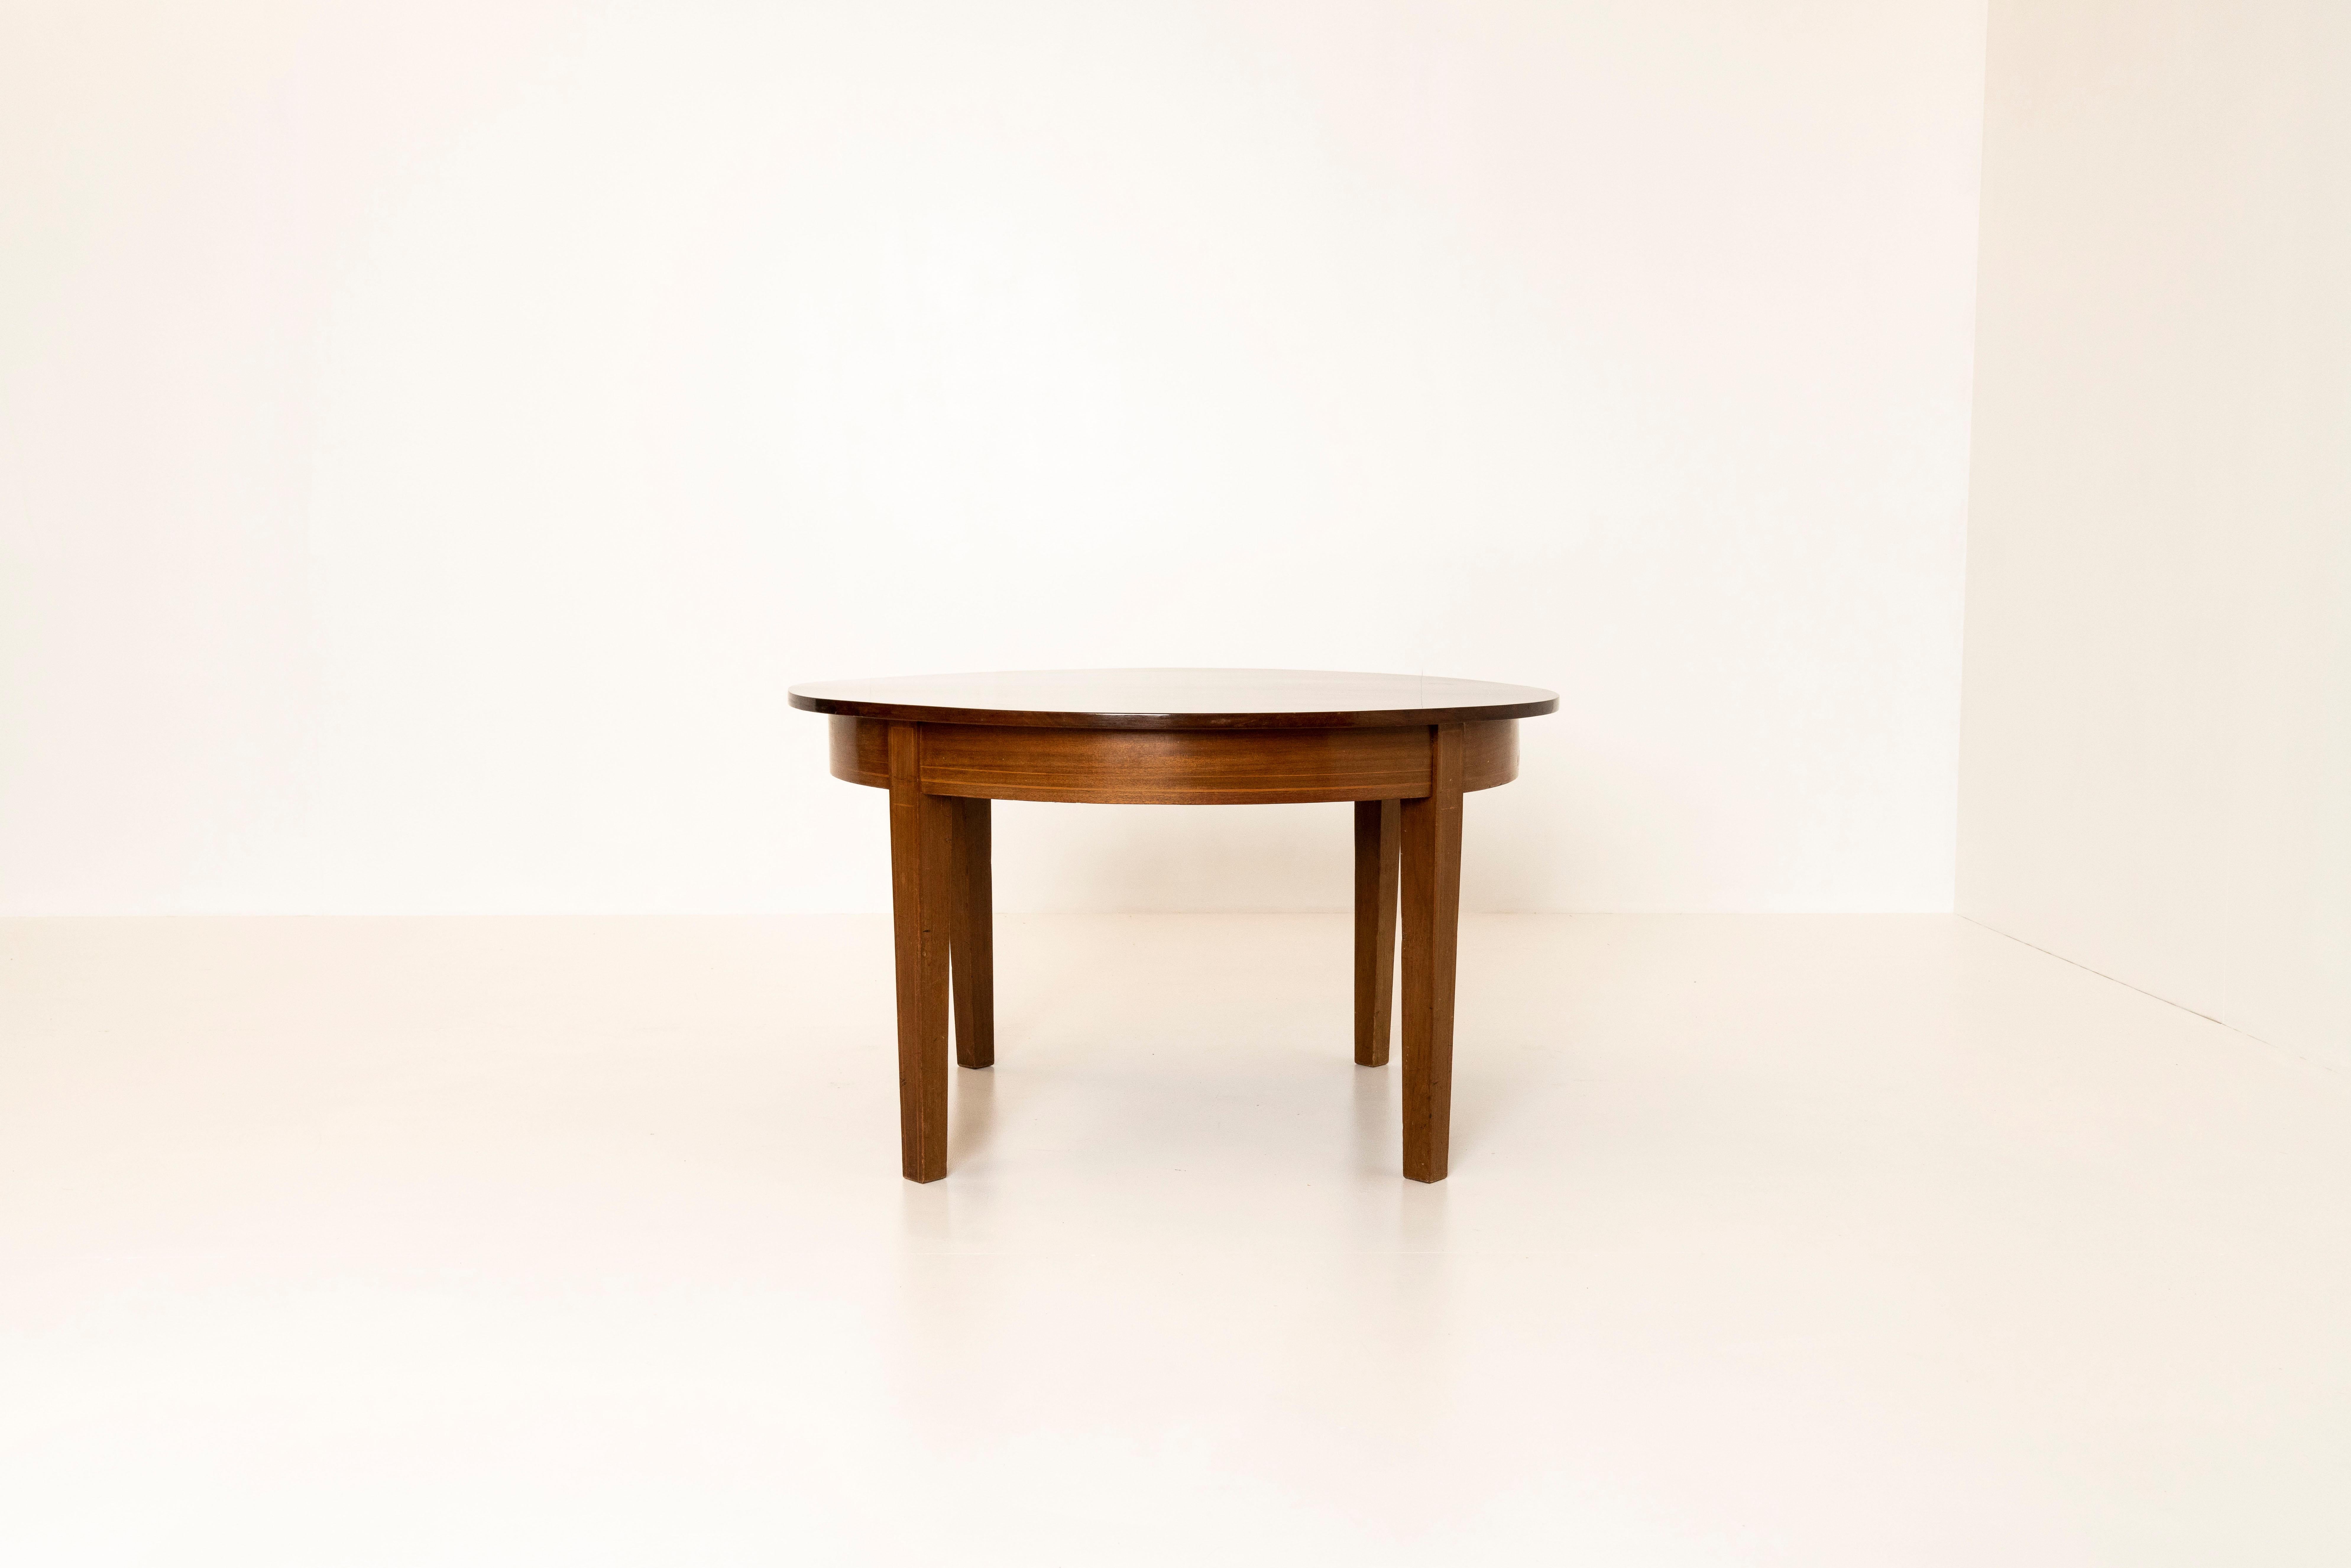 Charmanter runder dänischer Couchtisch aus Mahagoni aus den 1960er Jahren. Dieser Tisch hat eine goldfarbene Verkleidung über den Tisch und die Tischplatte. Es hat ein minimalistisches und funktionales Design und ist in gutem Zustand, mit normalen